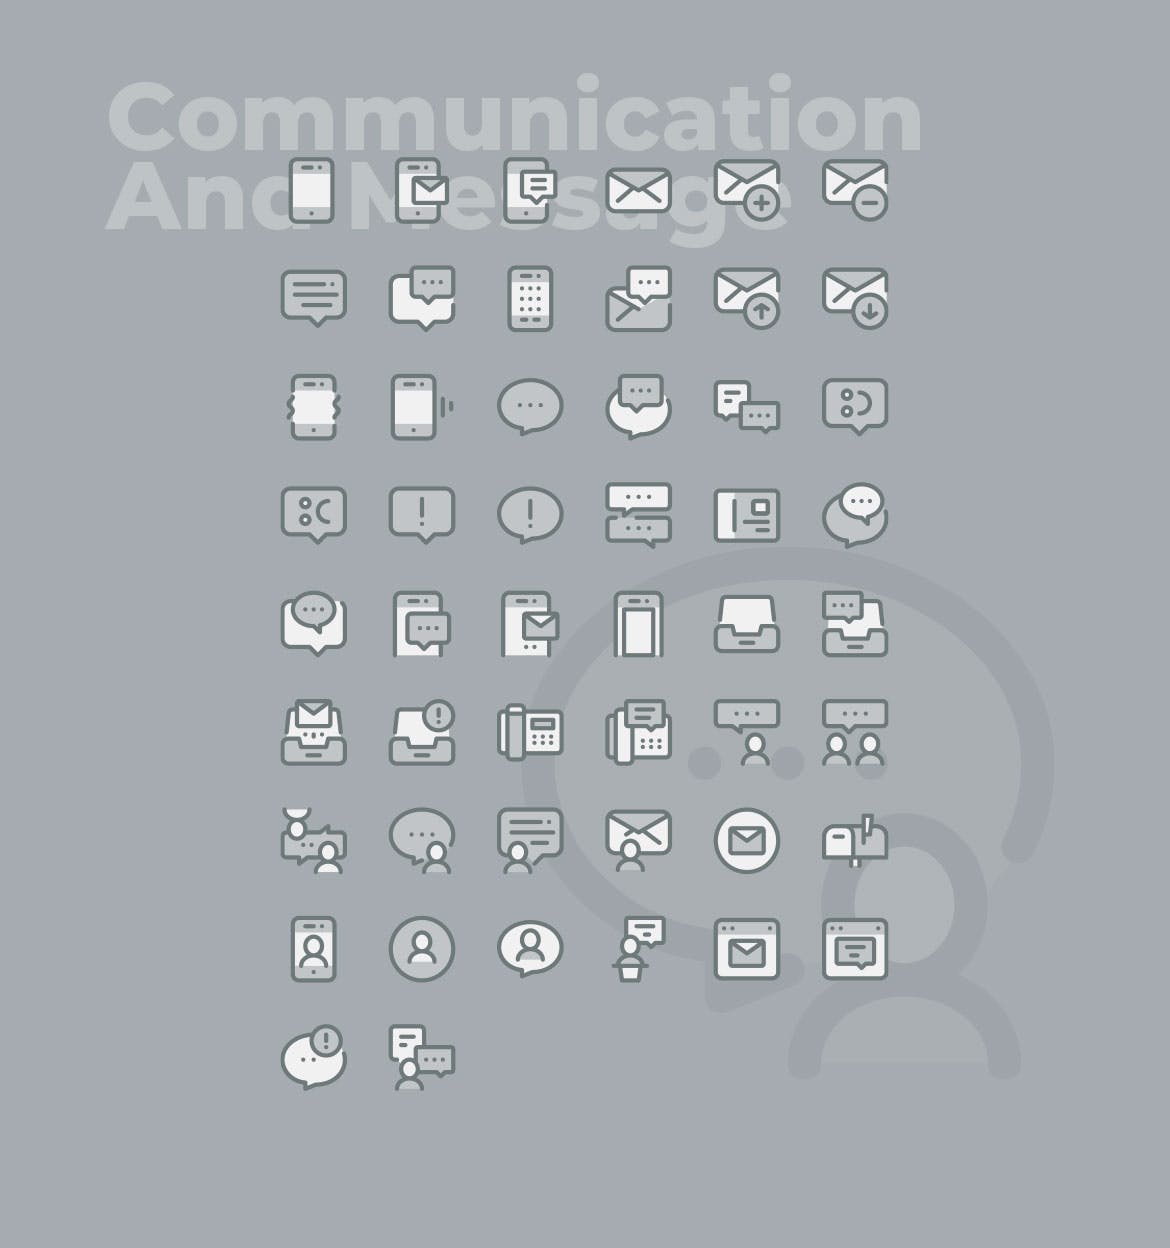 50枚社交通讯主题双色调矢量素材库精选图标 50 Communication Icons  –  Two Tone Style插图(1)